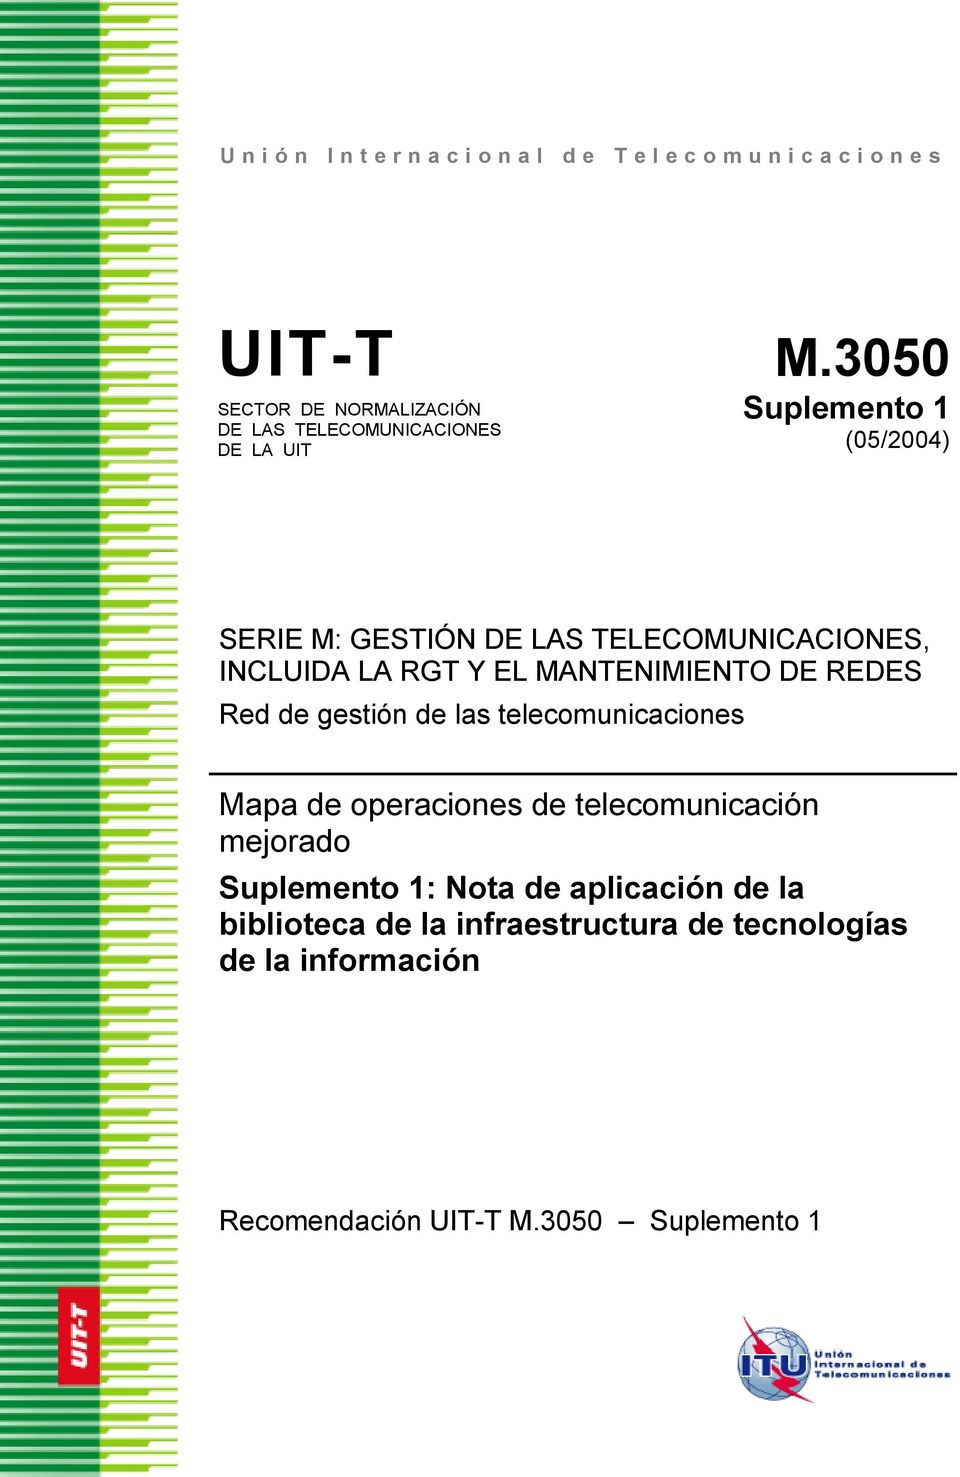 TELECOMUNICACIONES, INCLUIDA LA RGT Y EL MANTENIMIENTO DE REDES Red de gestión de las telecomunicaciones Mapa de